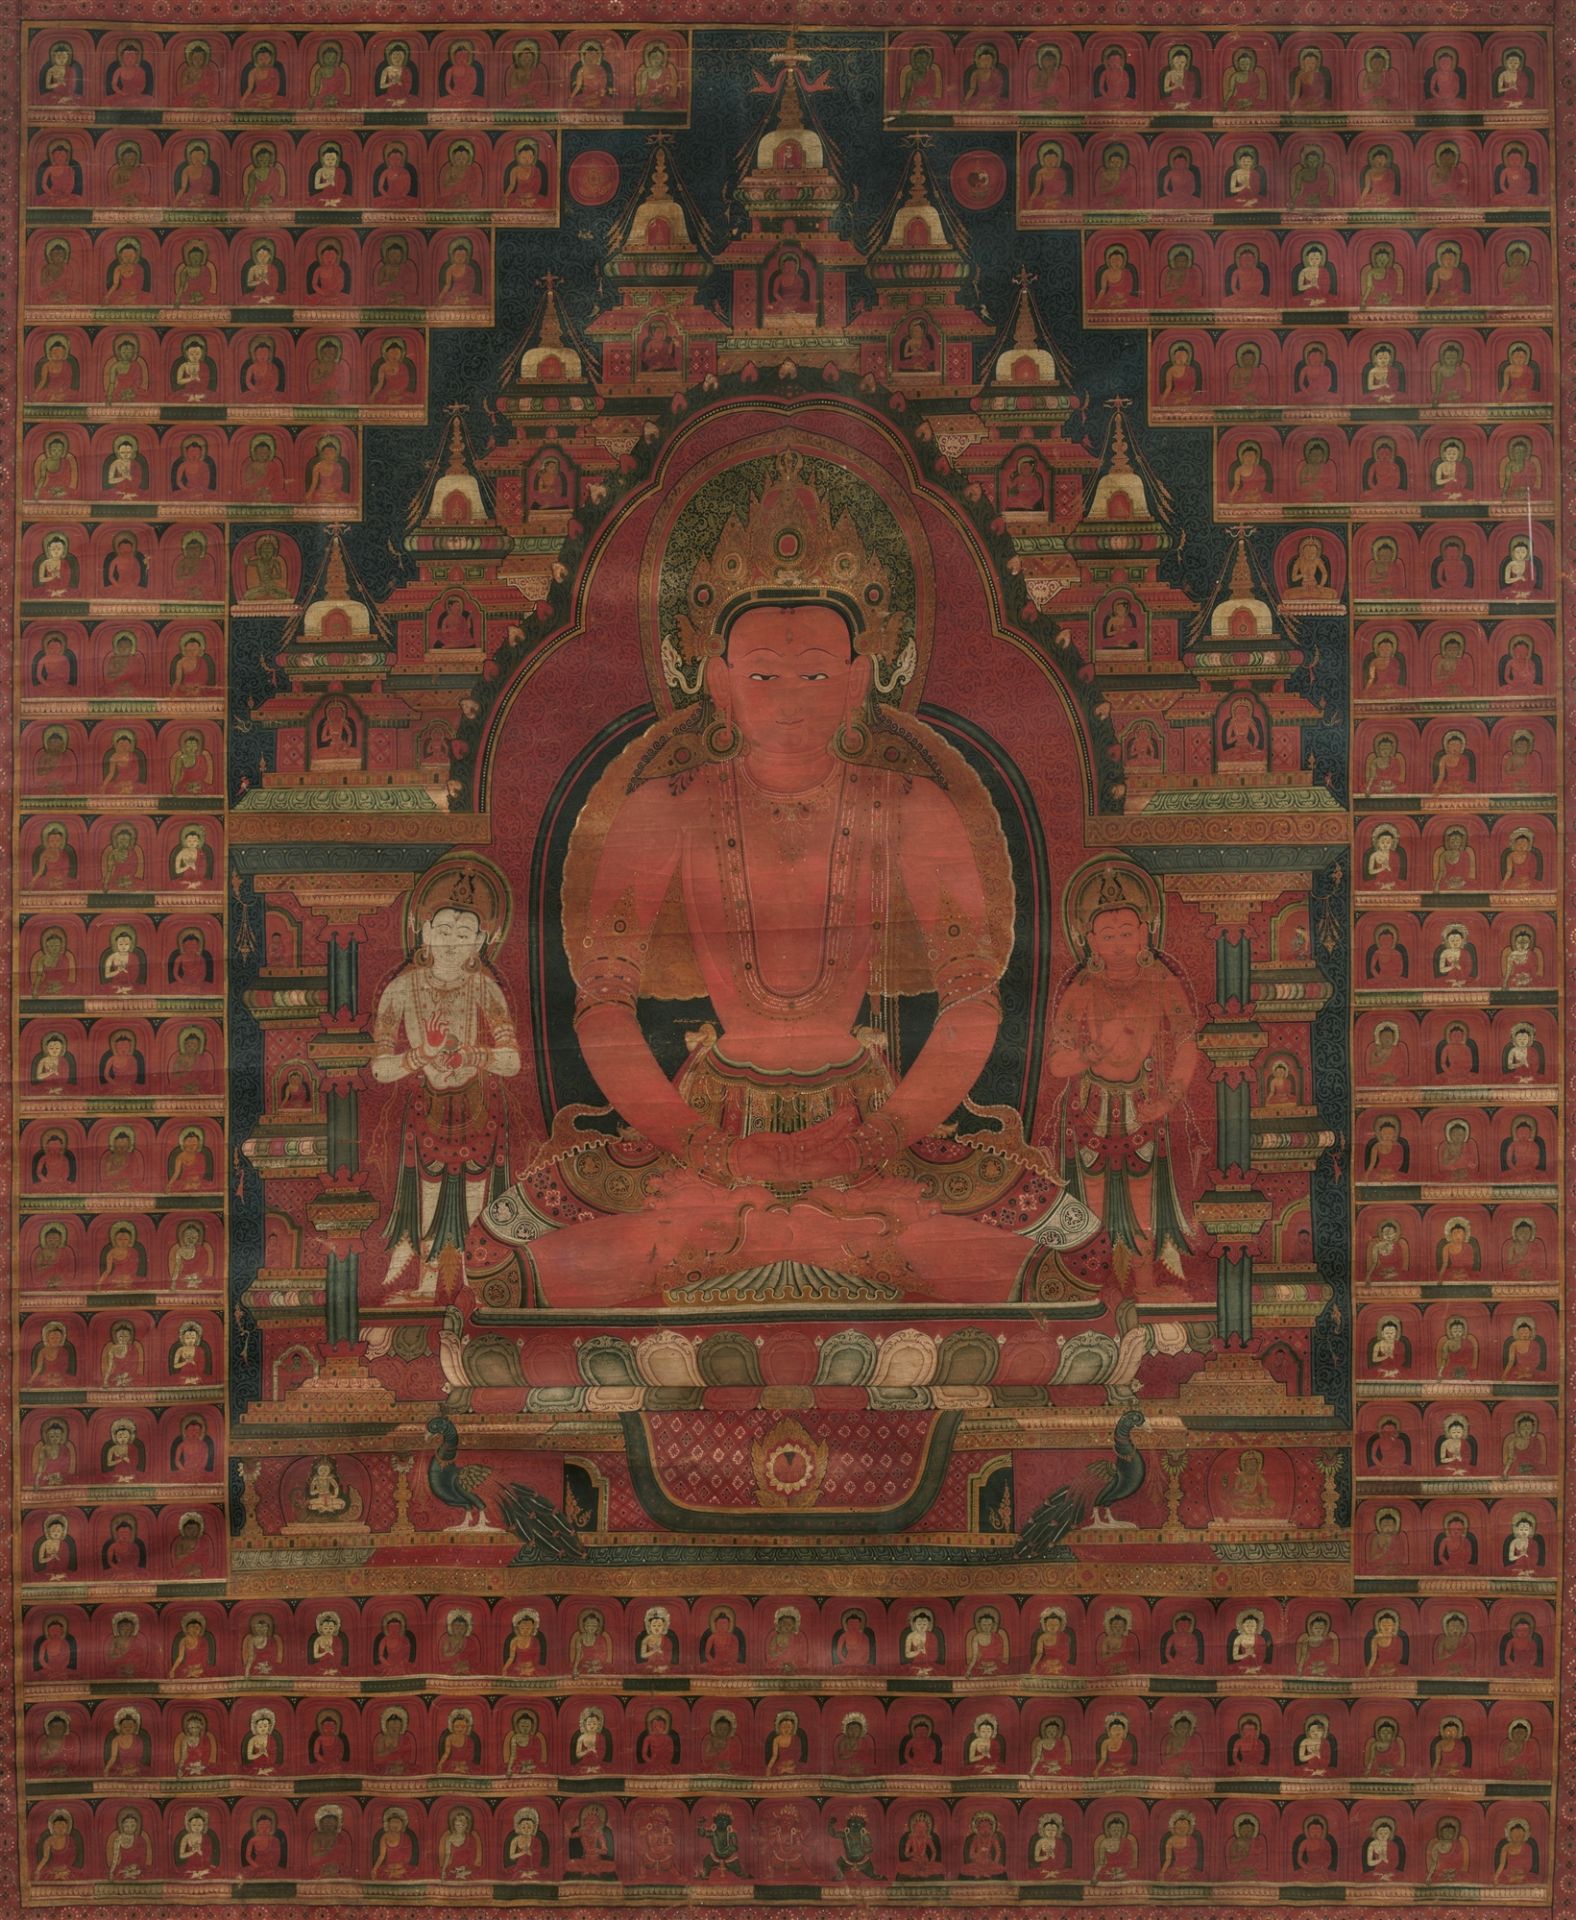 Imposantes und feines Thangka des Buddha Amitabha. Tibet, 16. Jh. oder früher